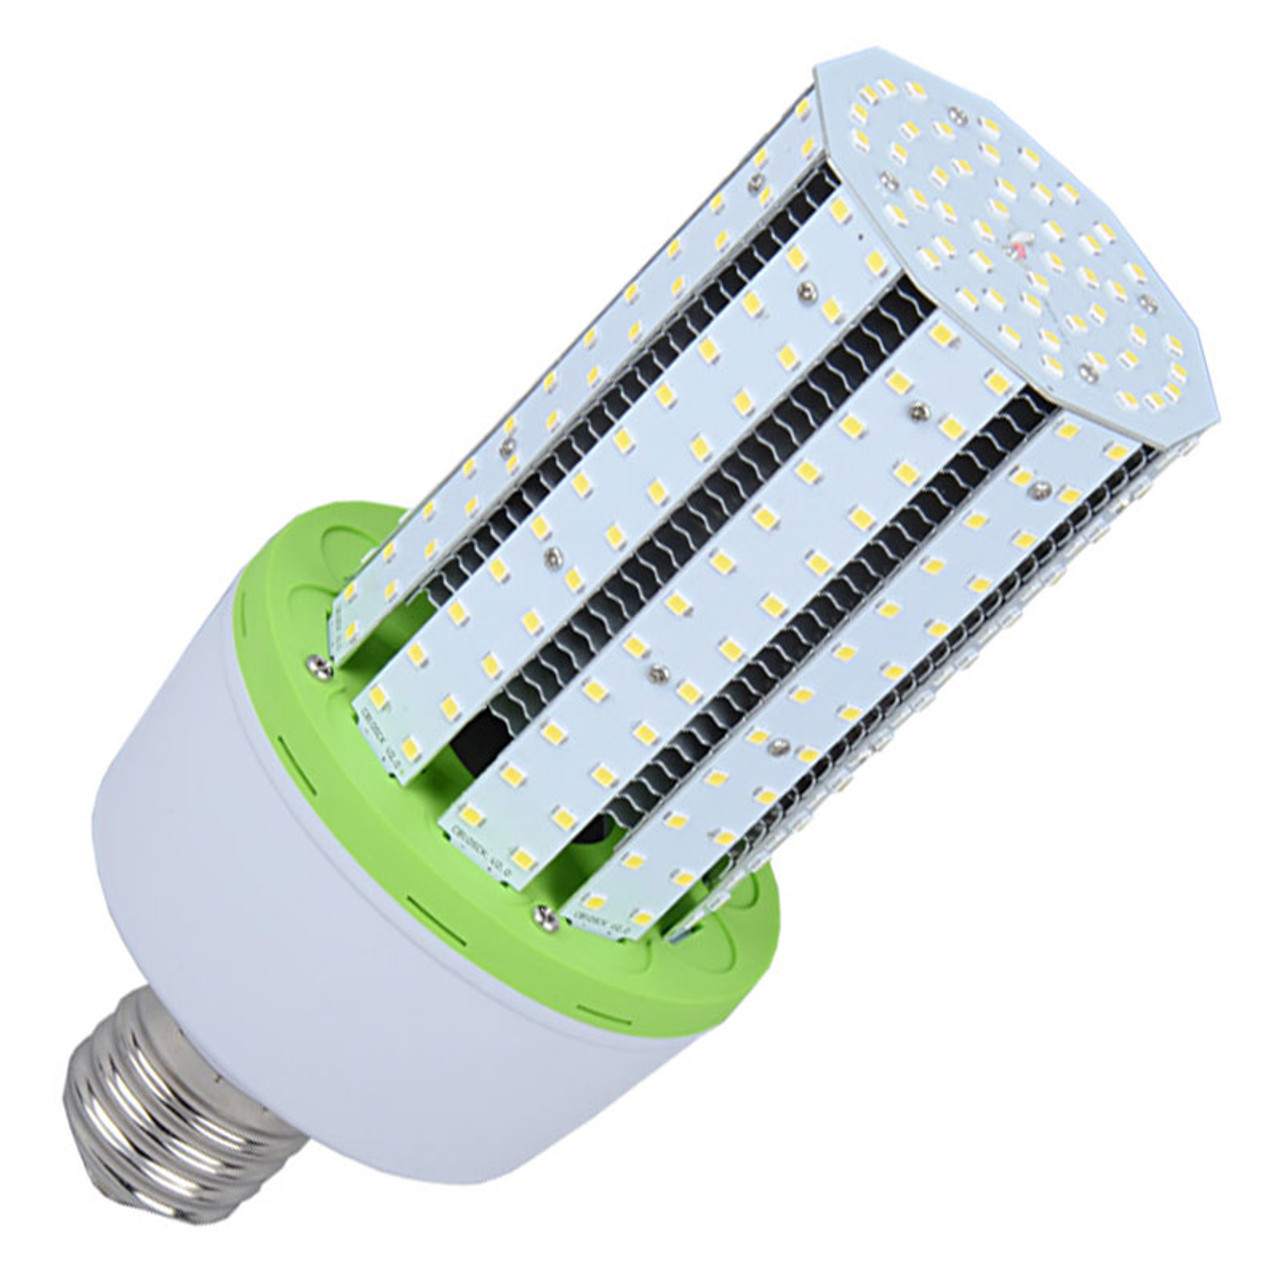 40-watt-led-corn-bulb-replaces-150-watt-hid-5-200-lumens-dlc